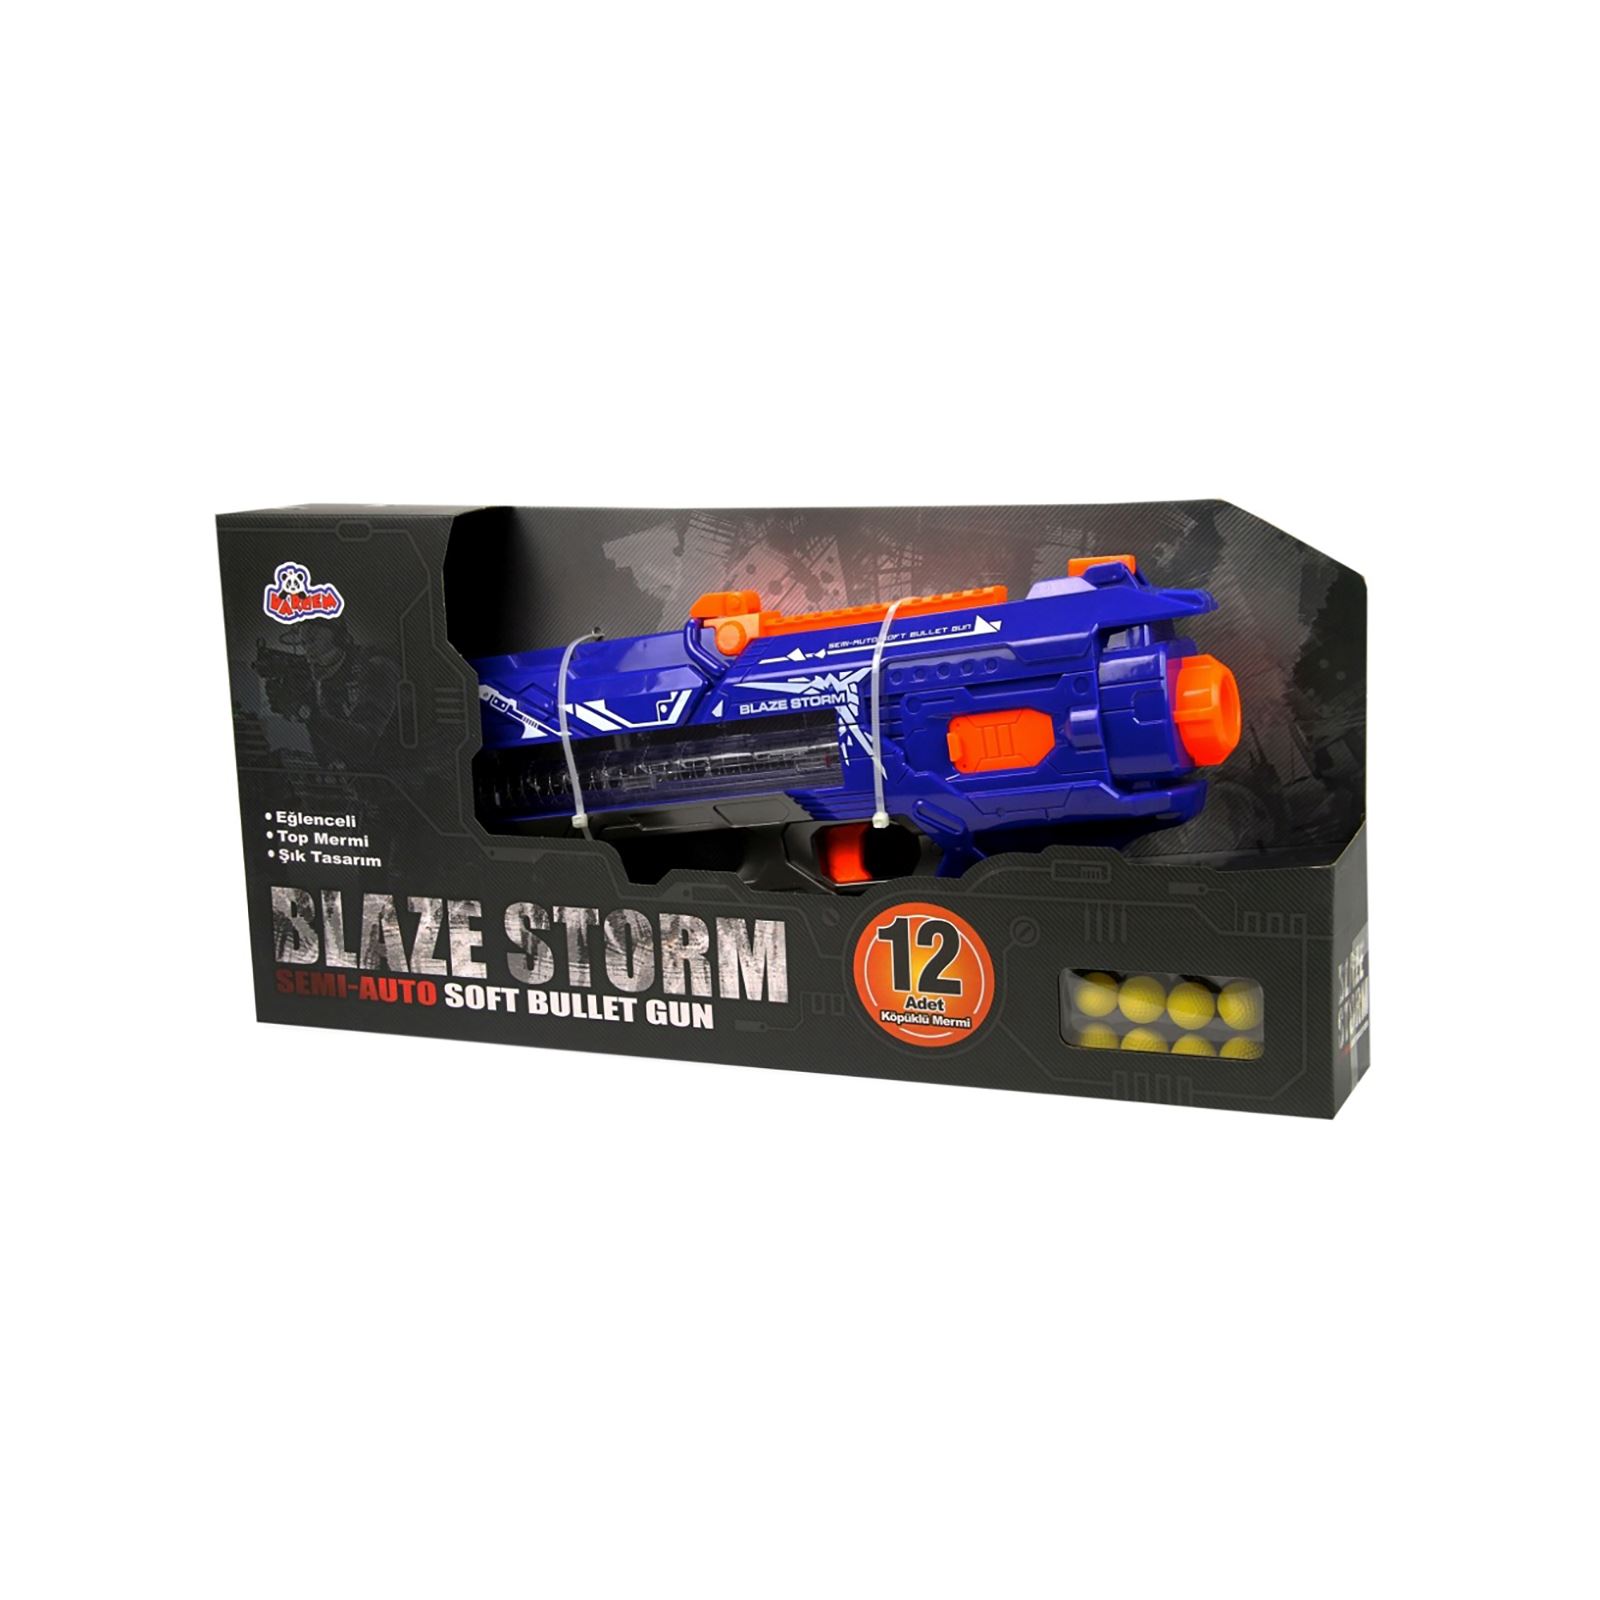 Blaze Storm Pilli Otomatik Sünger Atan Oyuncak Tüfek